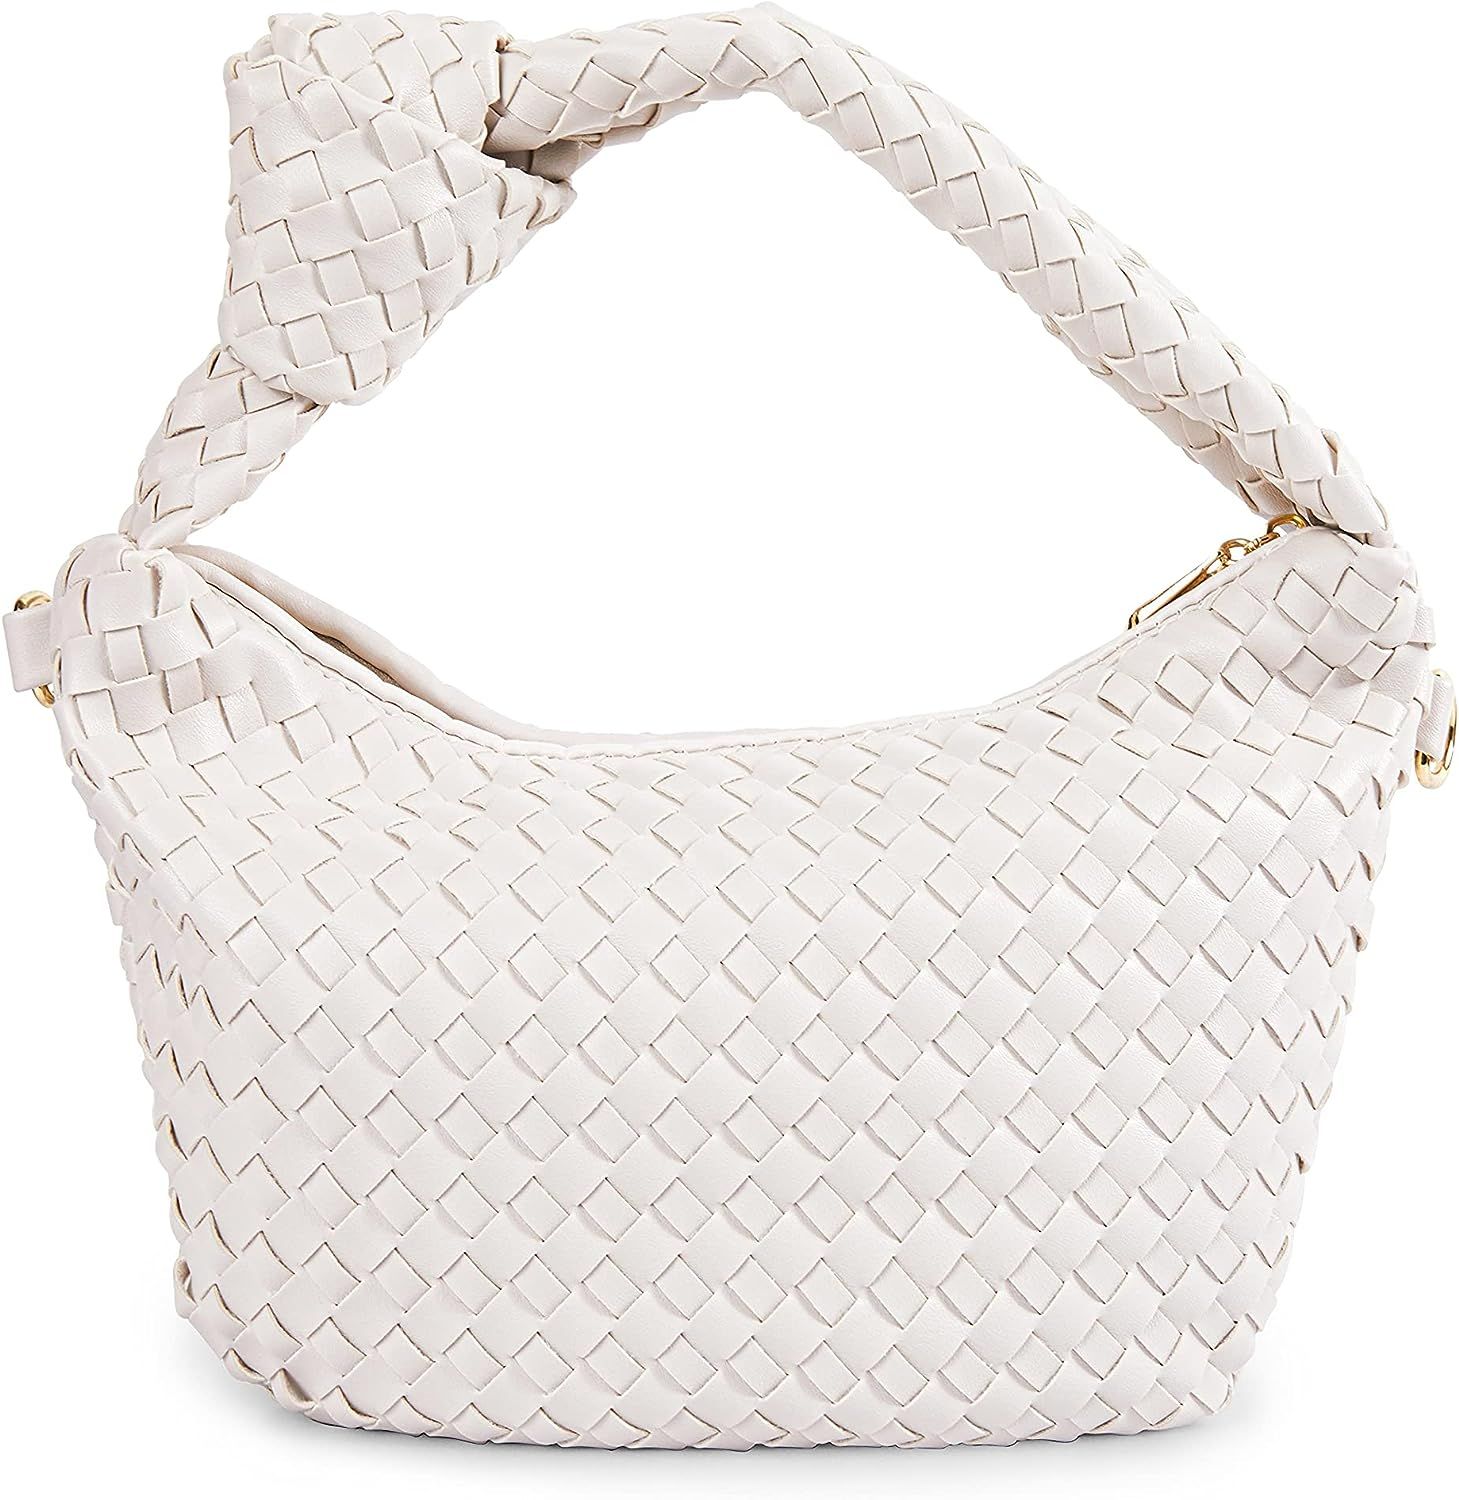 Women's Soft Faux Leather Tote Bag Top Handle Shoulder Bag Satchel Large Capacity Handbag (White) | Amazon (US)